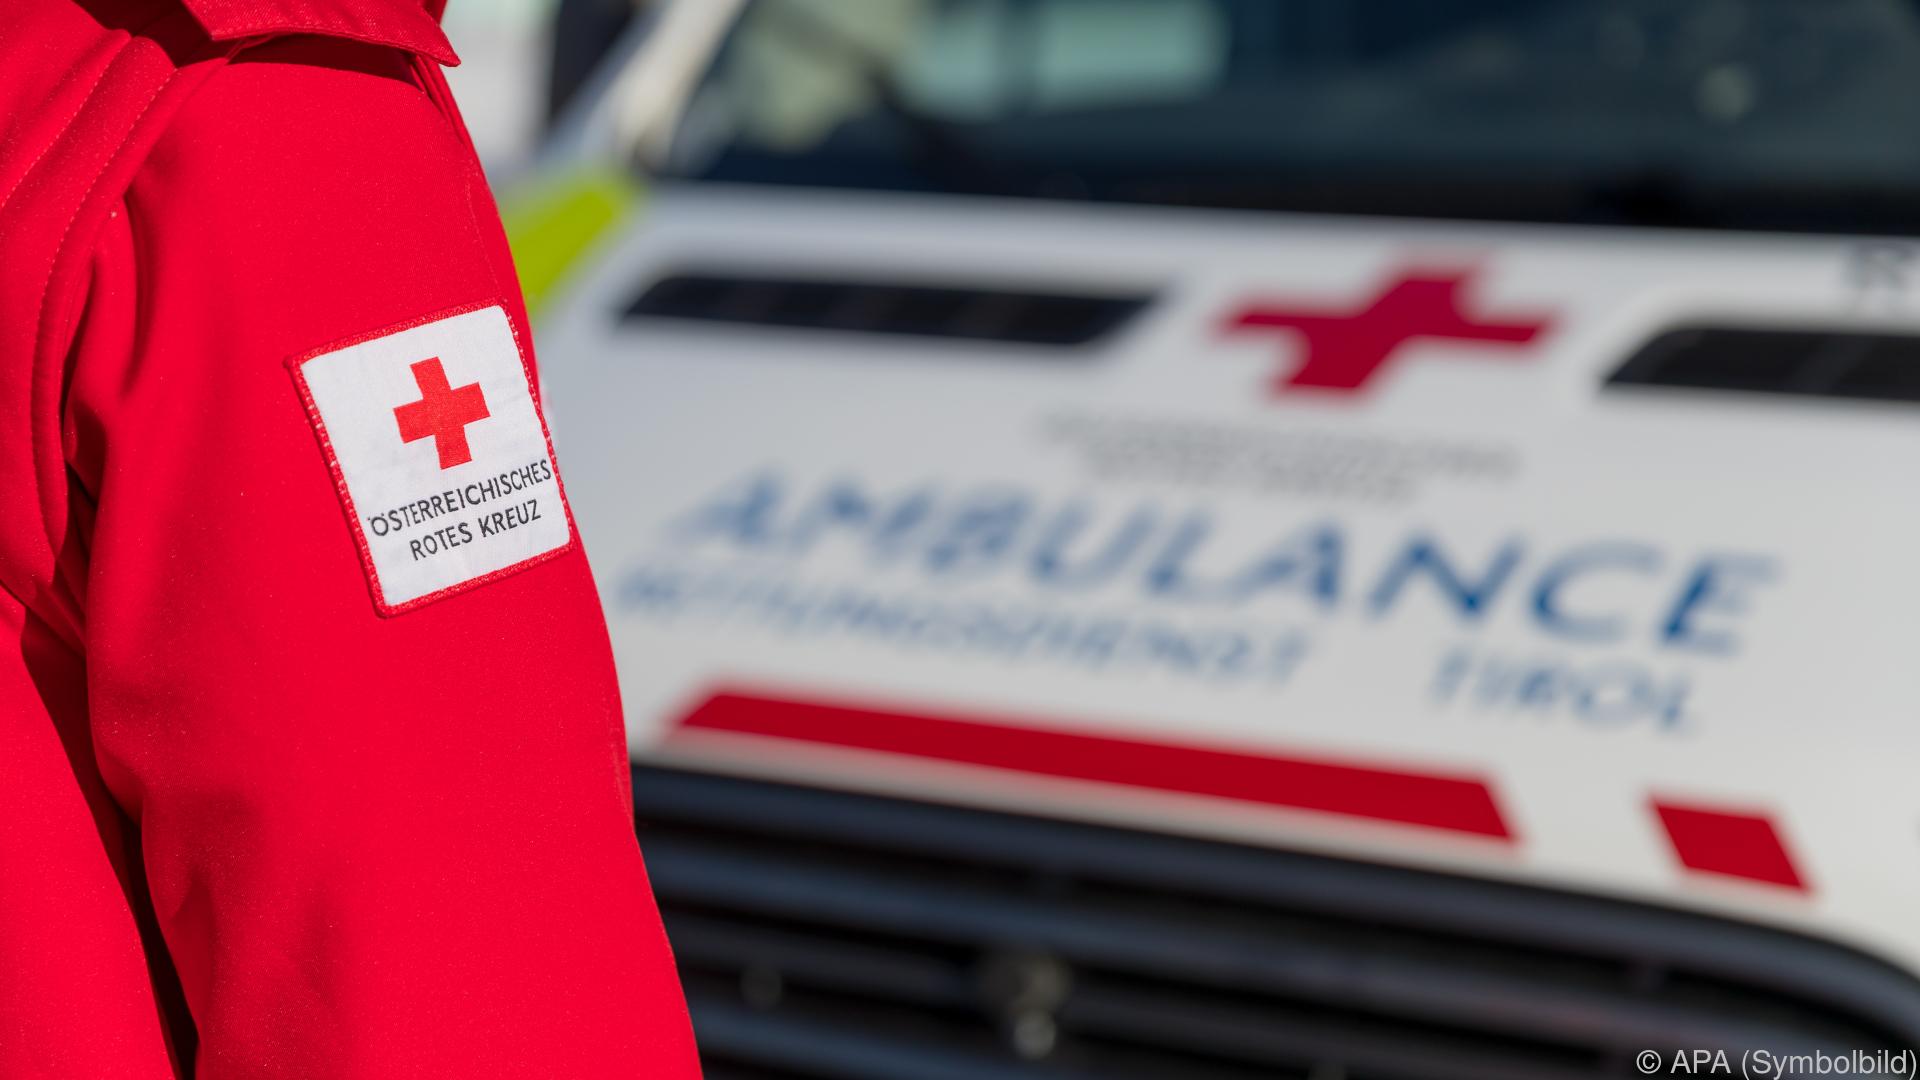 Fußgänger in Tirol von Pkw erfasst: 79-Jähriger starb